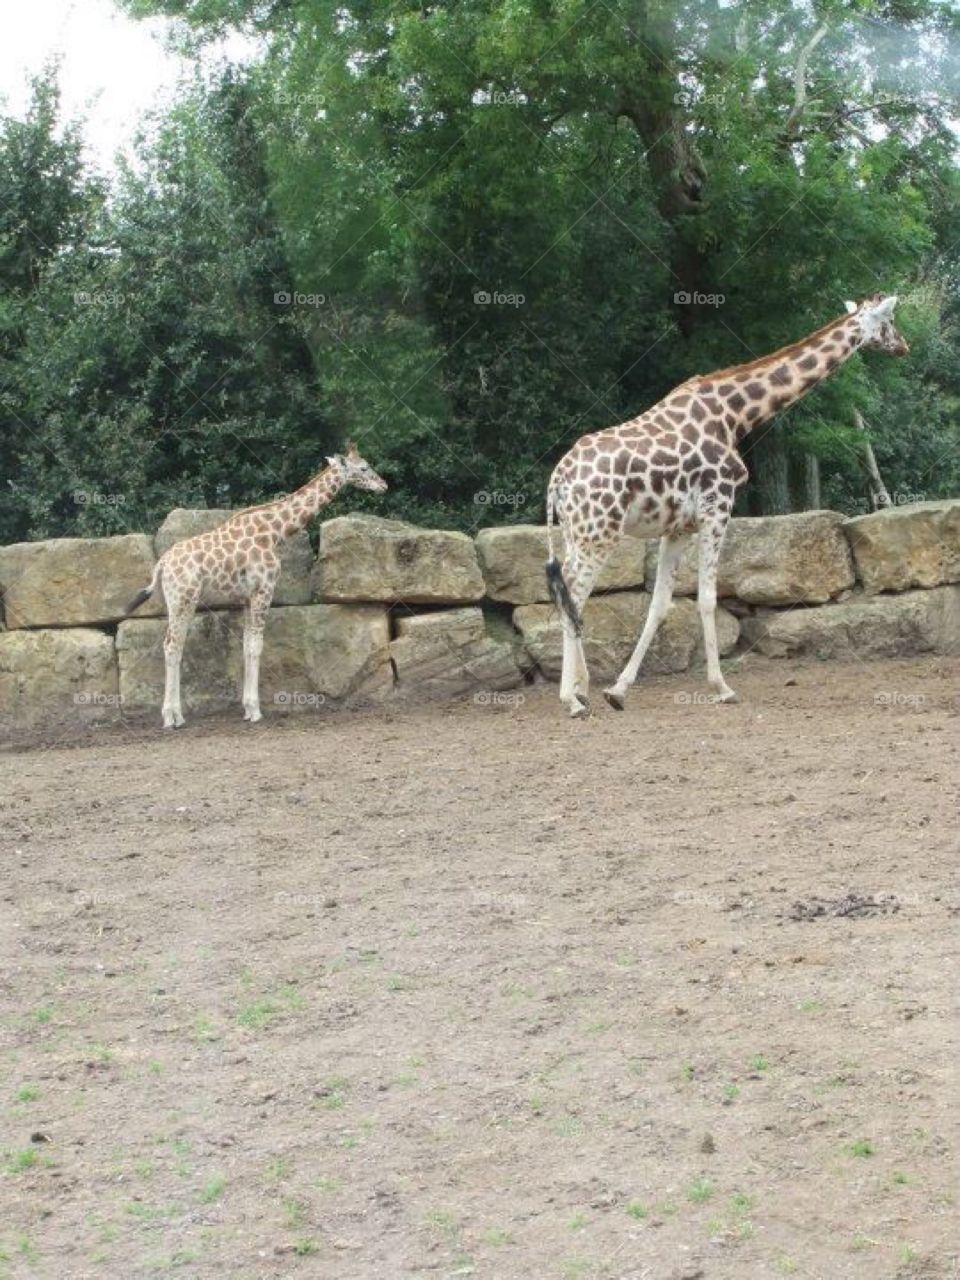 Walk on the wild side. Mum and baby giraffe 